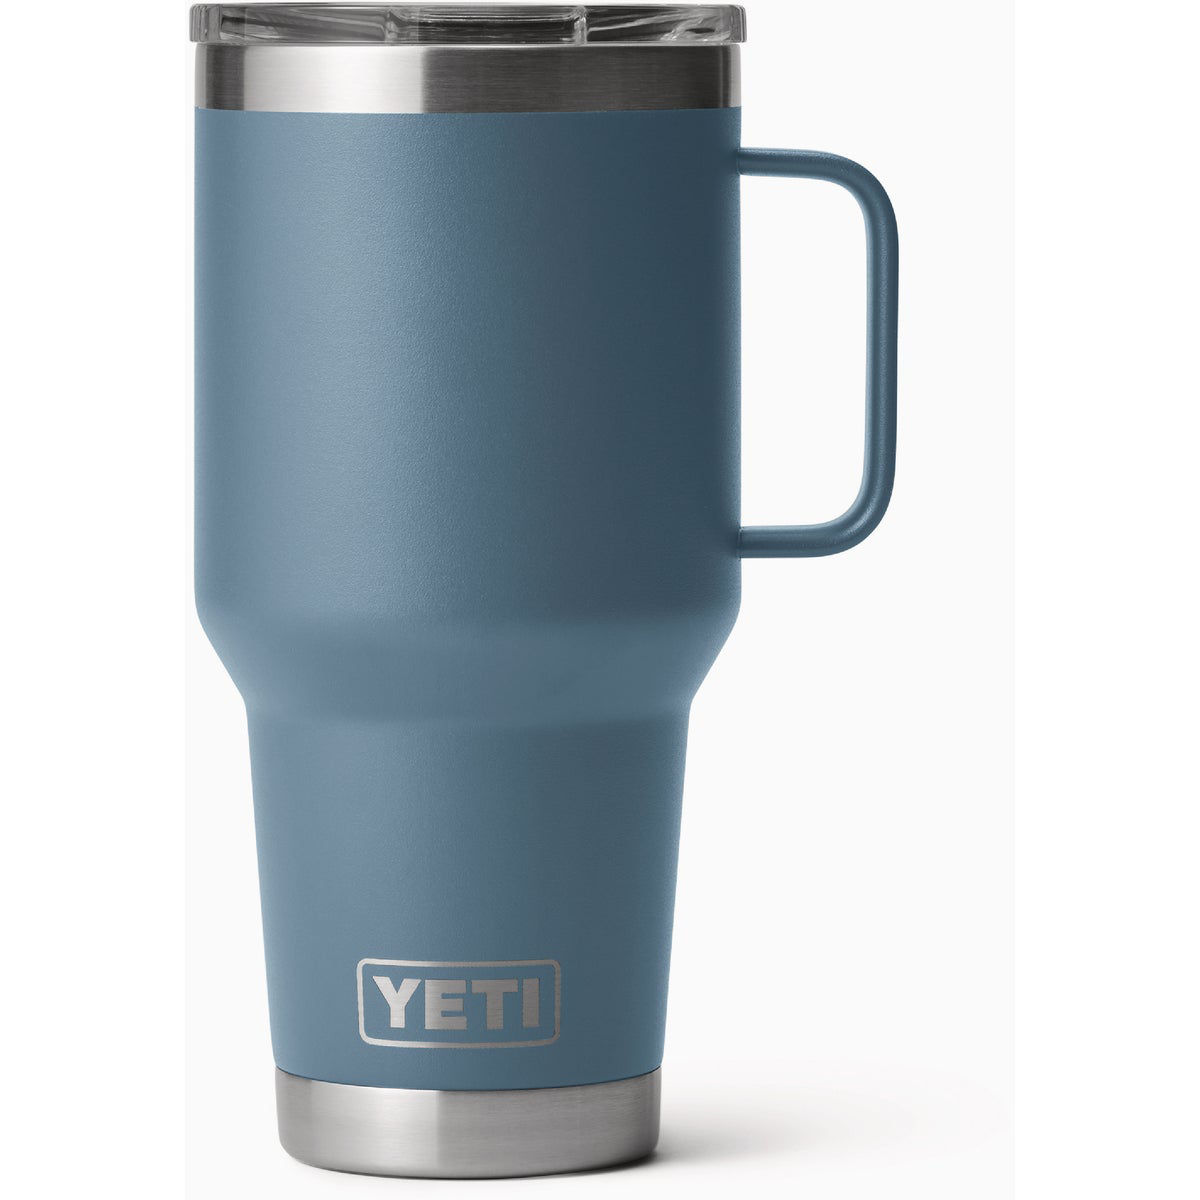 YETI Rambler 30 oz. Travel Mug - Nordic Blue $ 42